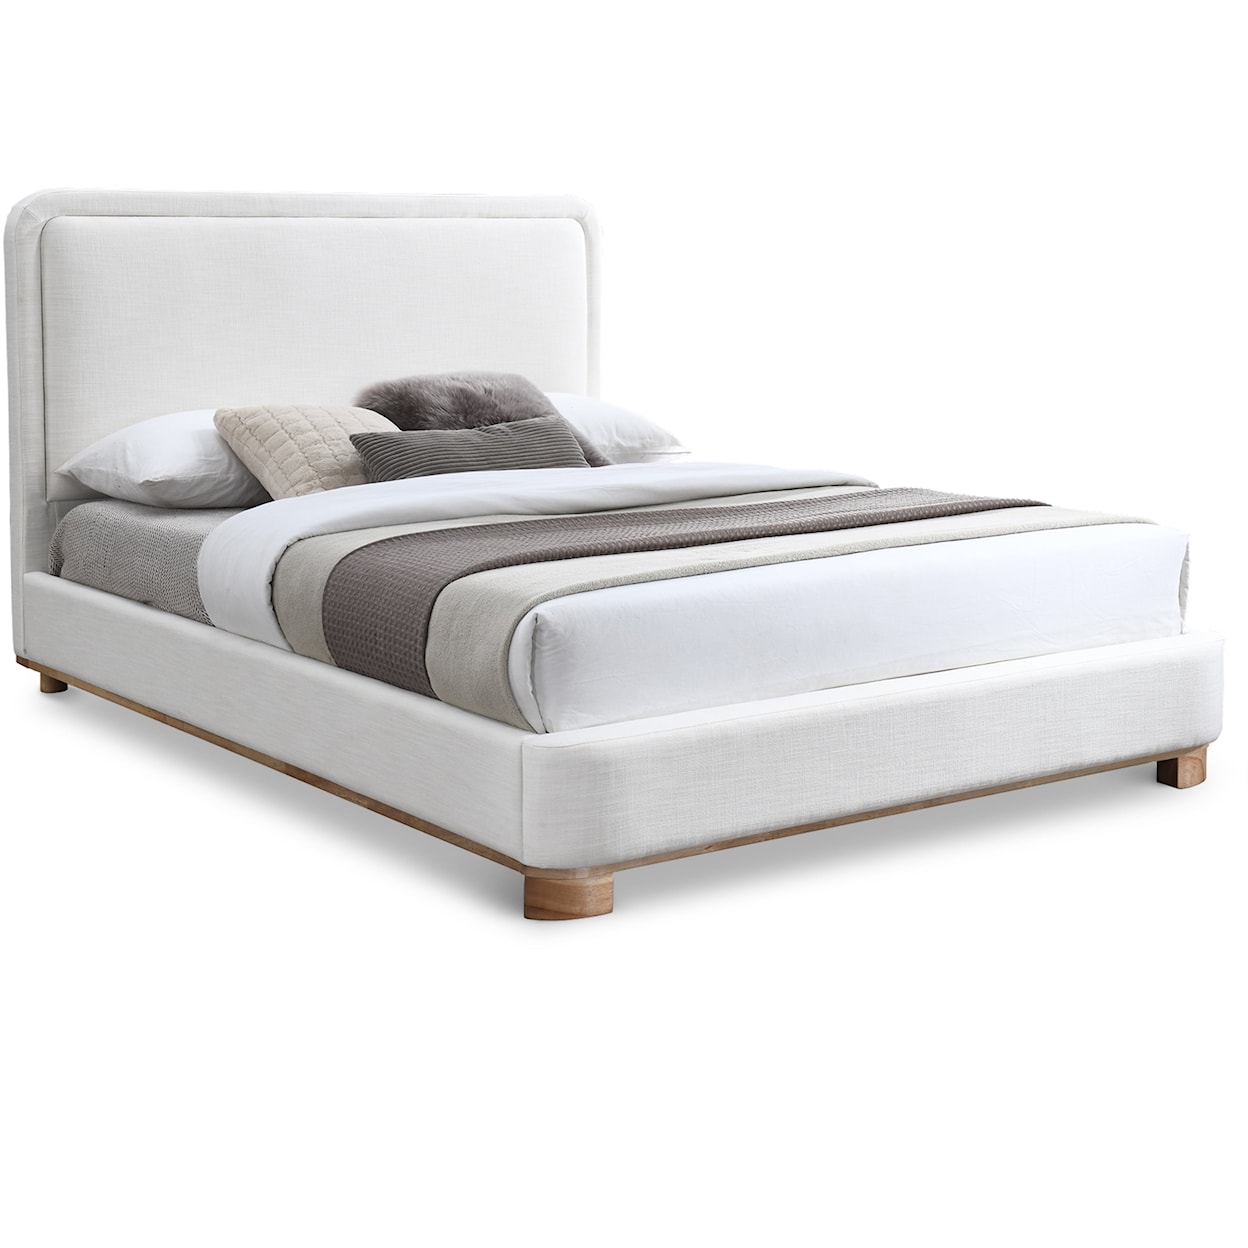 Meridian Furniture Nolita Full Bed